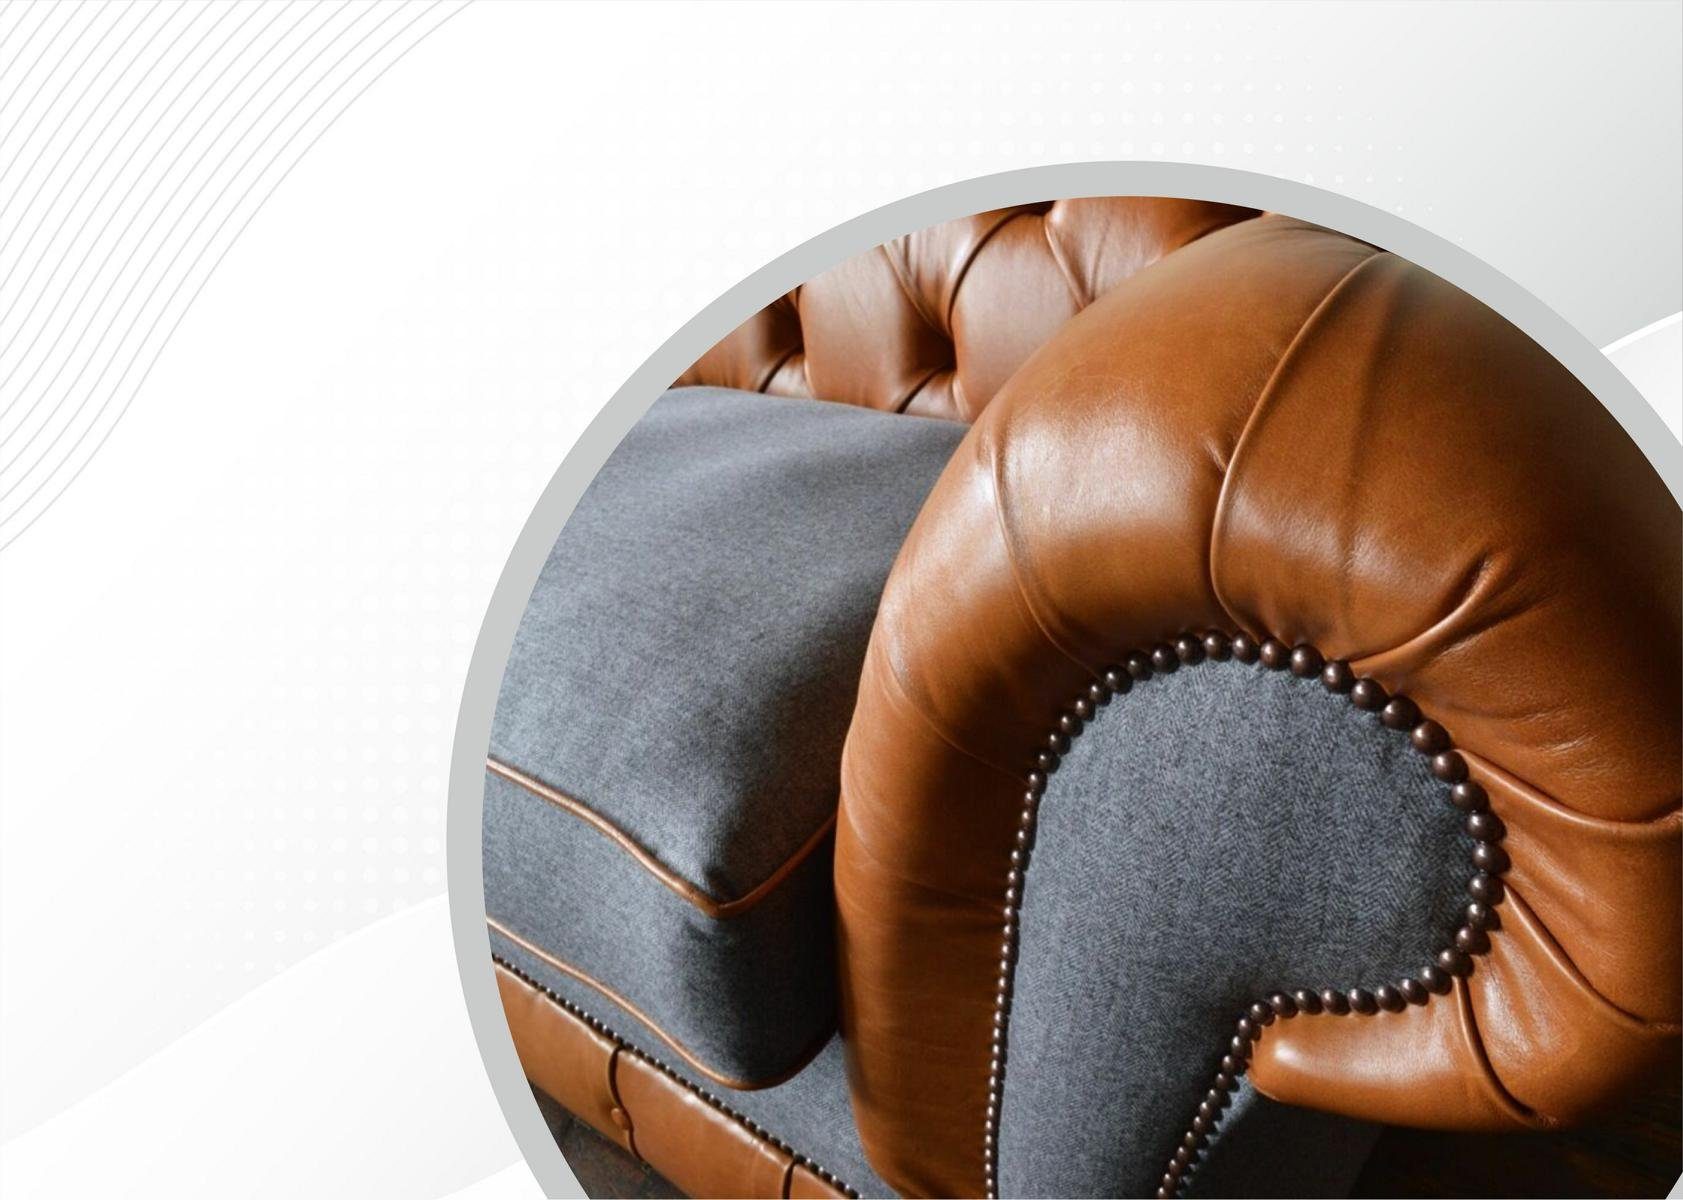 mit Design 3 cm, 220 Chesterfield-Sofa, Chesterfield Couch Knöpfen. Sofa Rückenlehne Die JVmoebel Sitzer